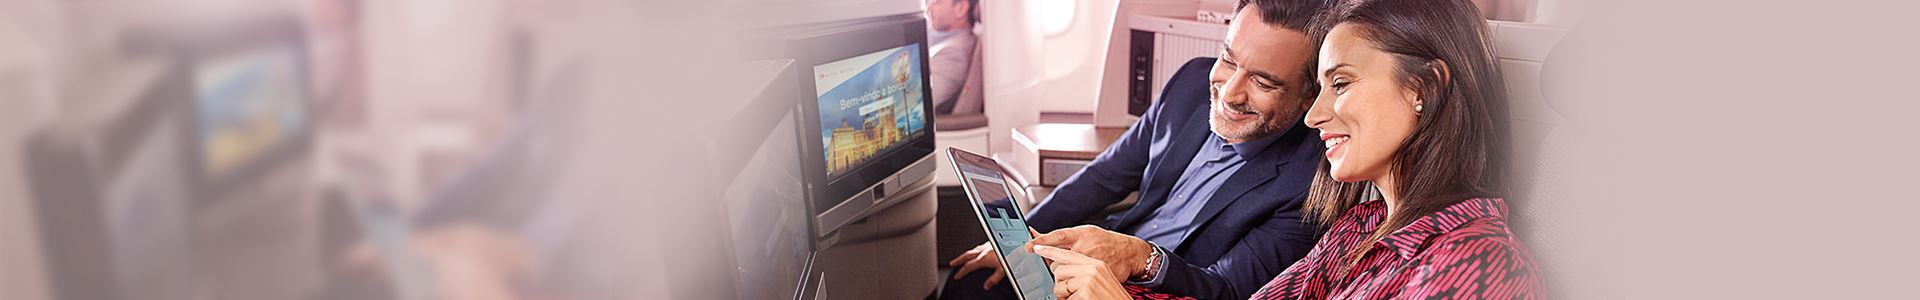 Close de uma mulher sorridente e um homem sorridente sentados em um avião. A mulher está segurando um tablet, e o homem está olhando para ele. Ambos estão apontando para a tela do tablet. Há duas telas na frente deles, embutidas nos assentos do avião.